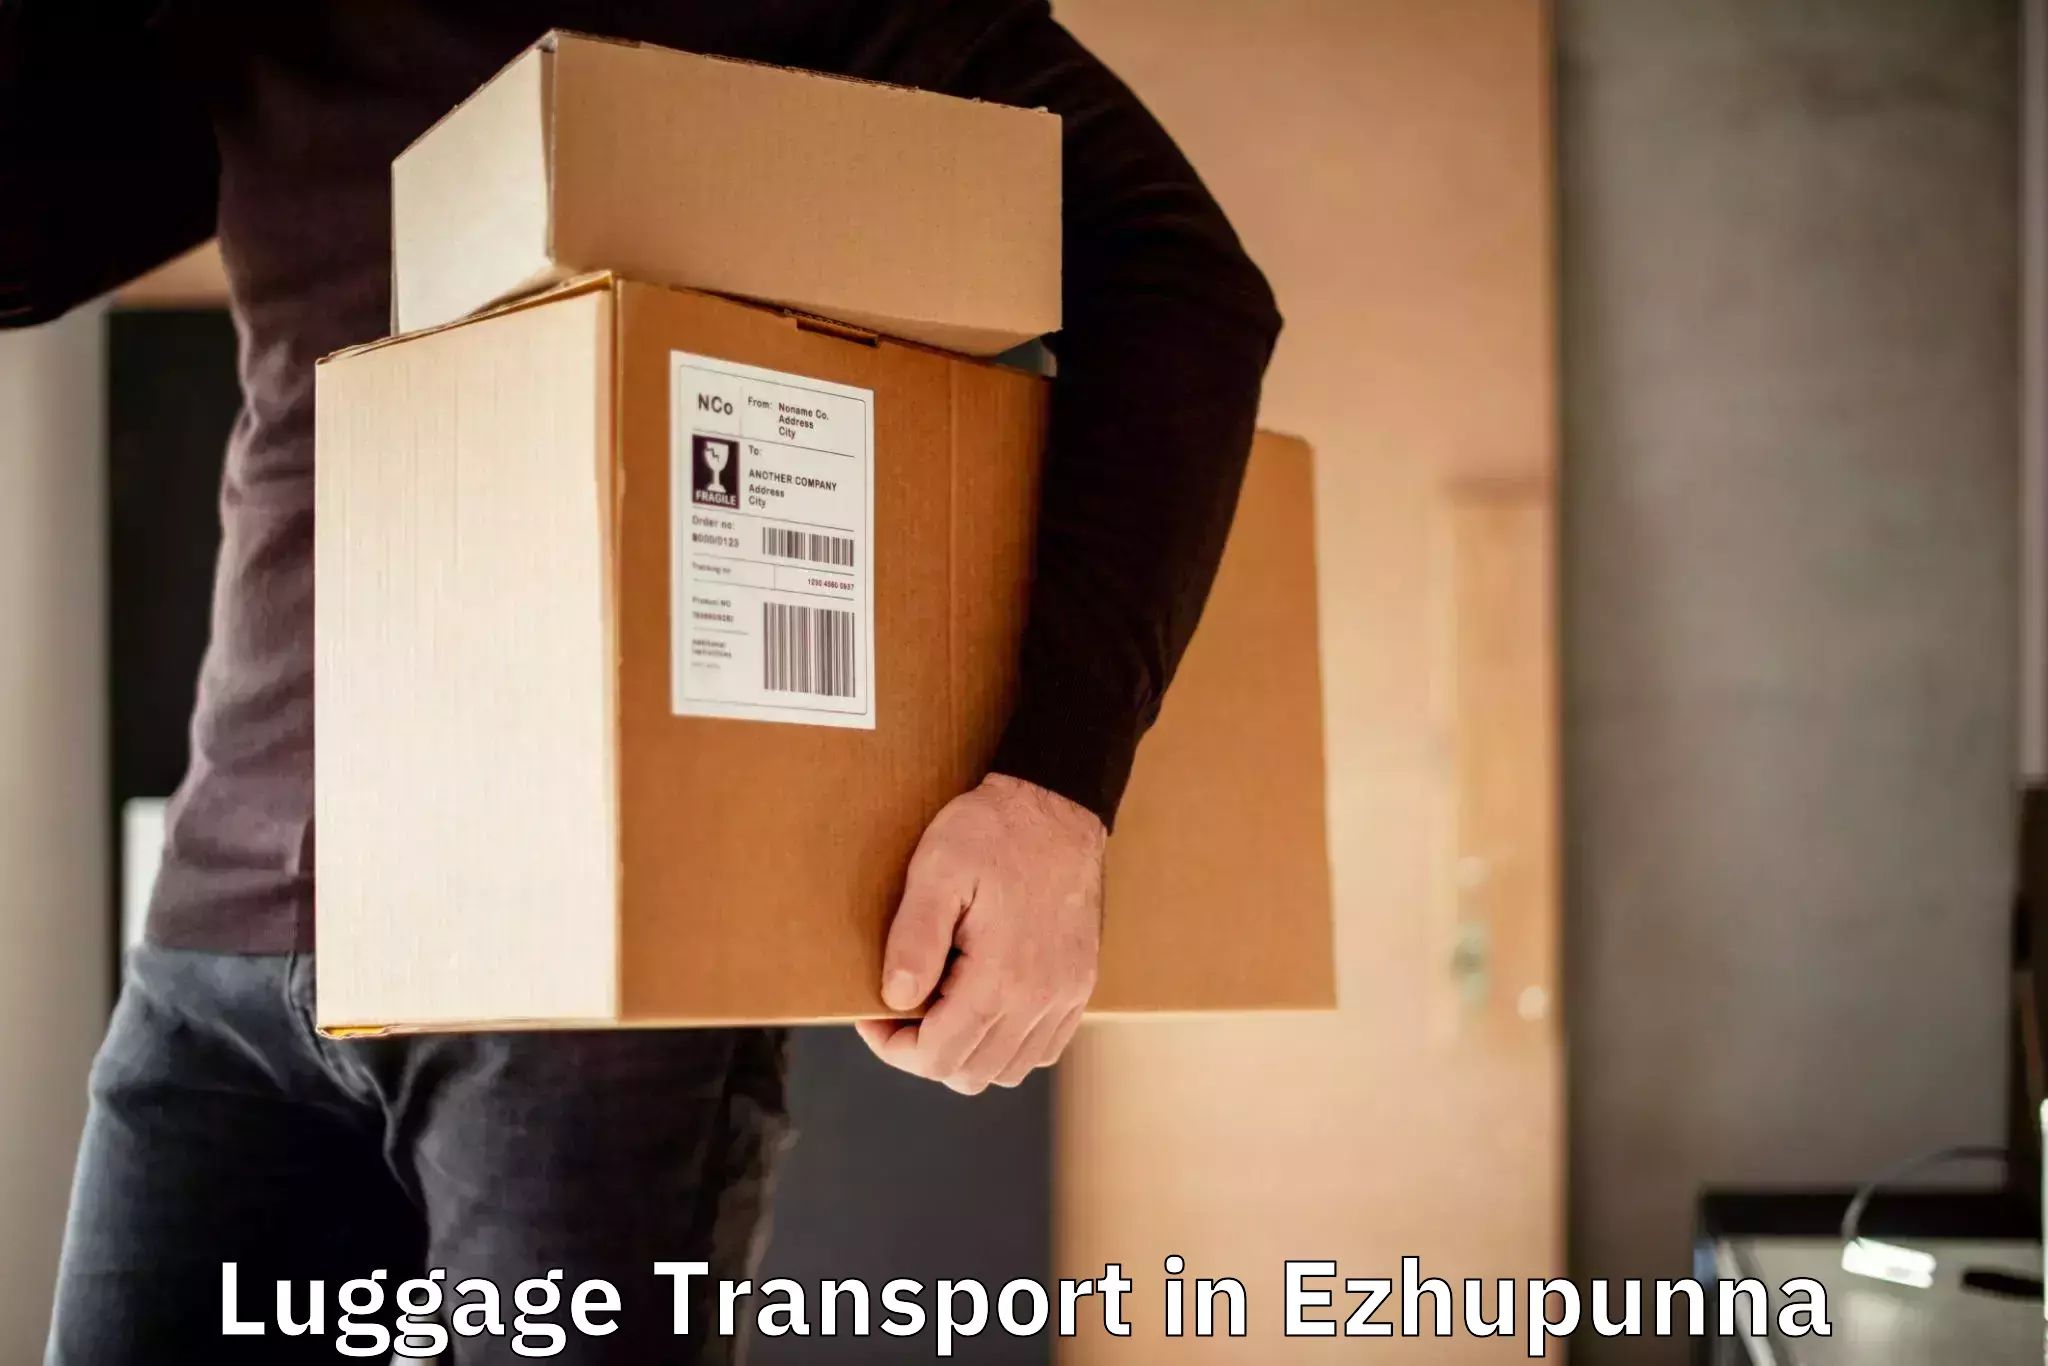 Baggage transport scheduler in Ezhupunna